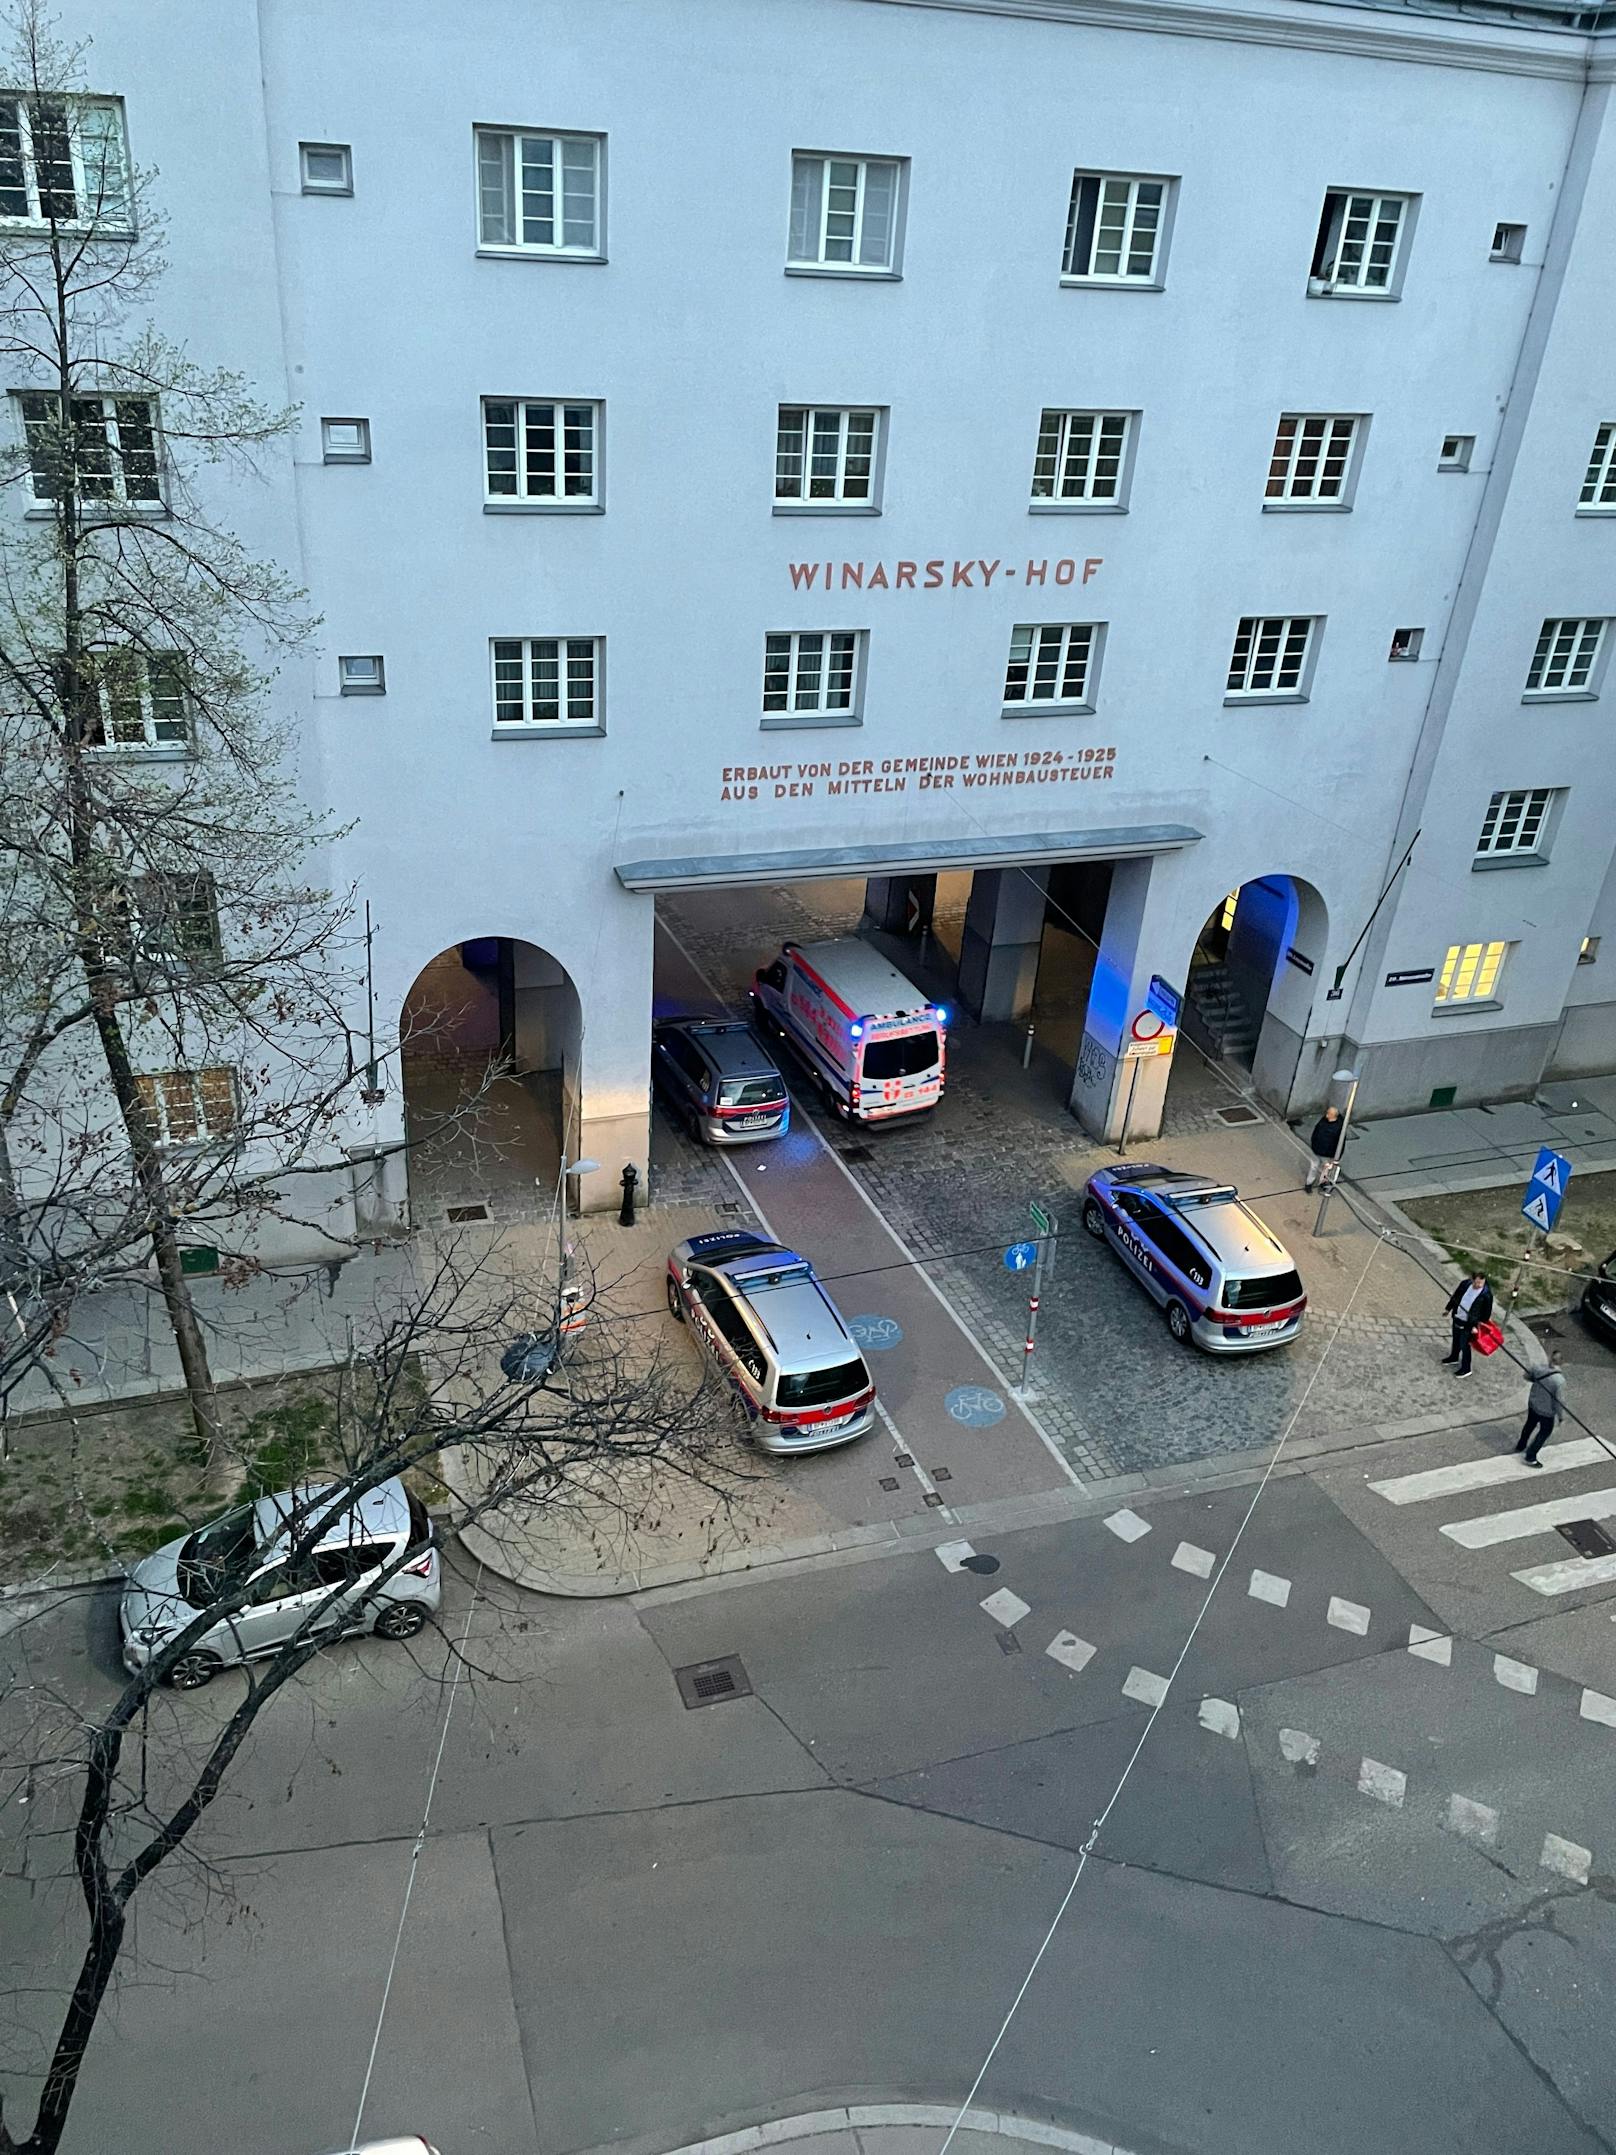 Polizei-Einsatz im Winarsky-Hof.